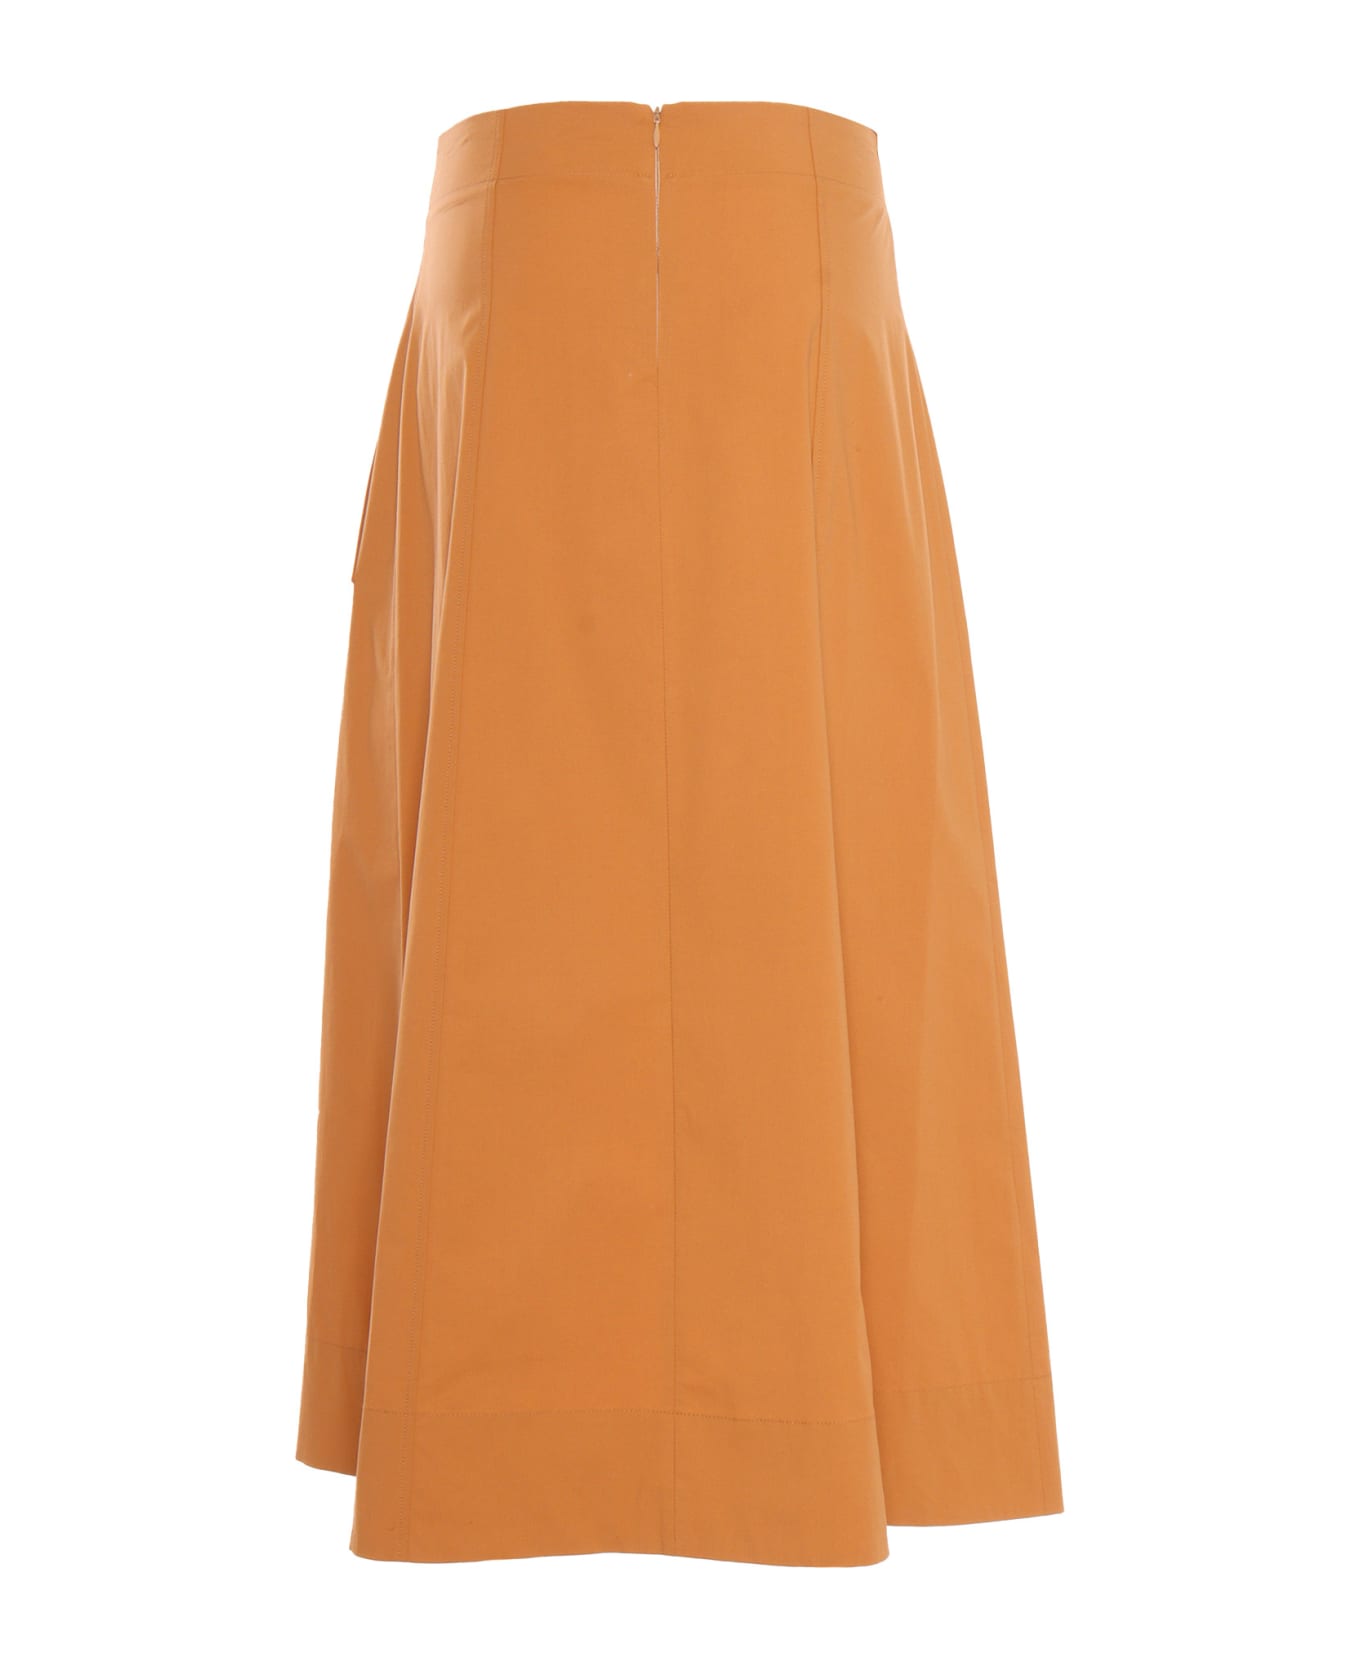 Antonelli Orange Skirt With Bow - ORANGE